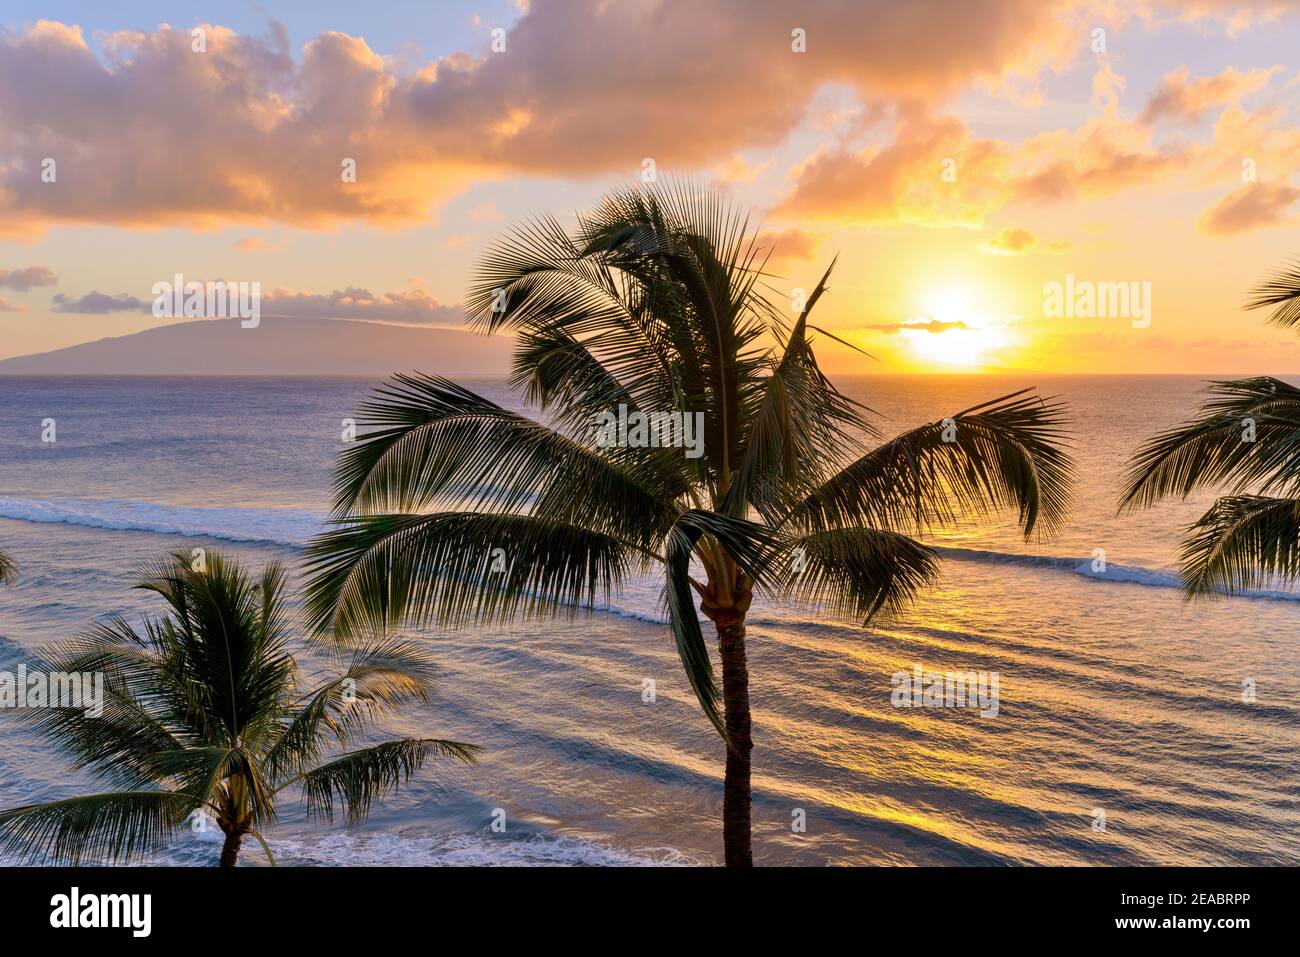 Sonnenuntergang Maui - EIN farbenfroher Sonnenuntergang an der Nordwestküste von Maui, mit Lanai Insel im Hintergrund. Maui, Hawaii, USA. Stockfoto